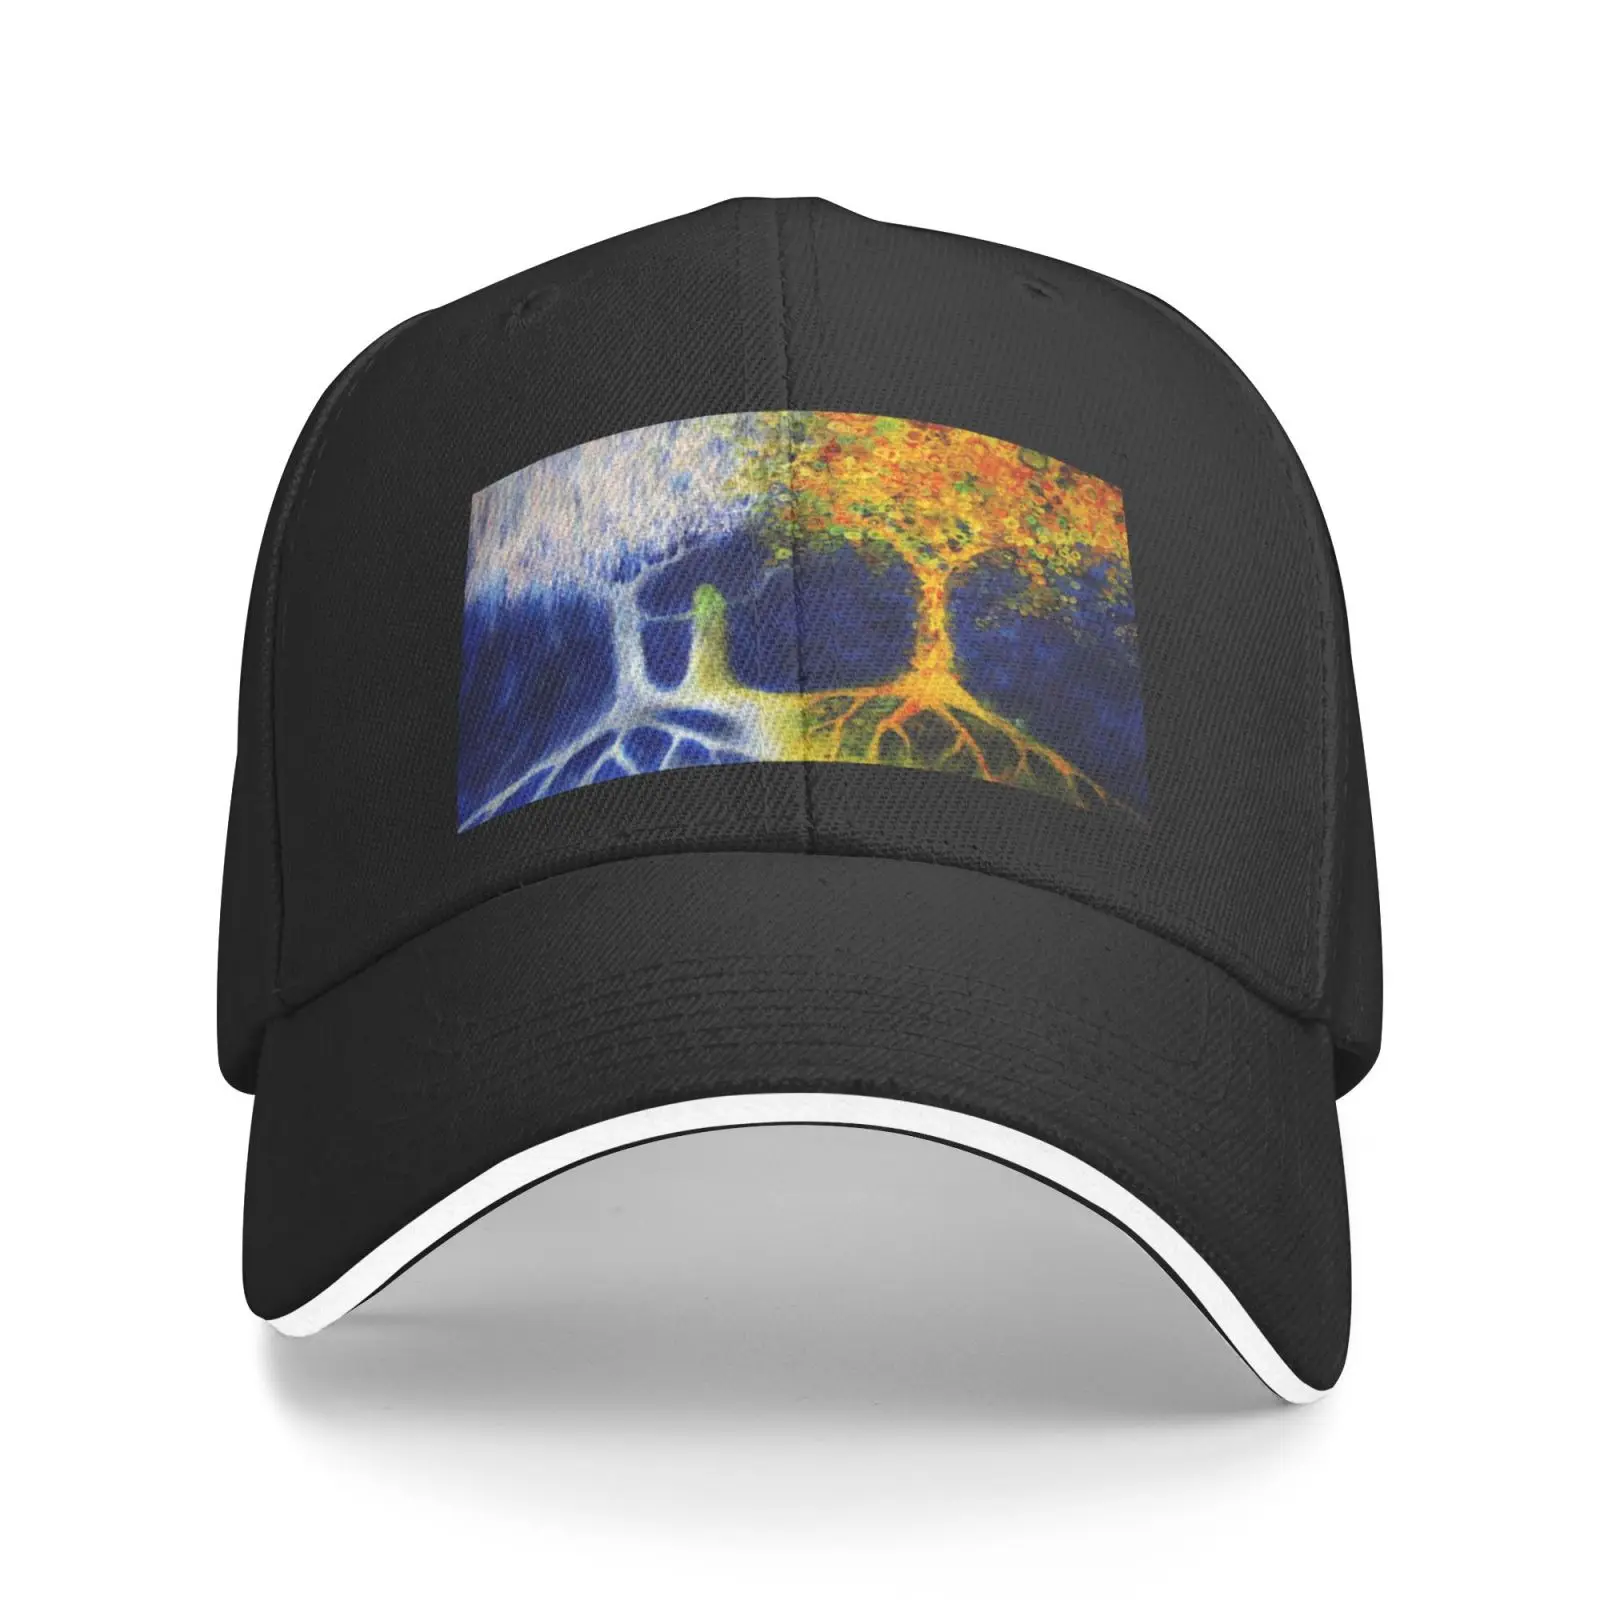 

Кепка с двумя деревьями Валинора 3451, кепки с индивидуальным логотипом, бразильские шапки для мужчин, дизайнерская шапка, летняя бейсболка, З...